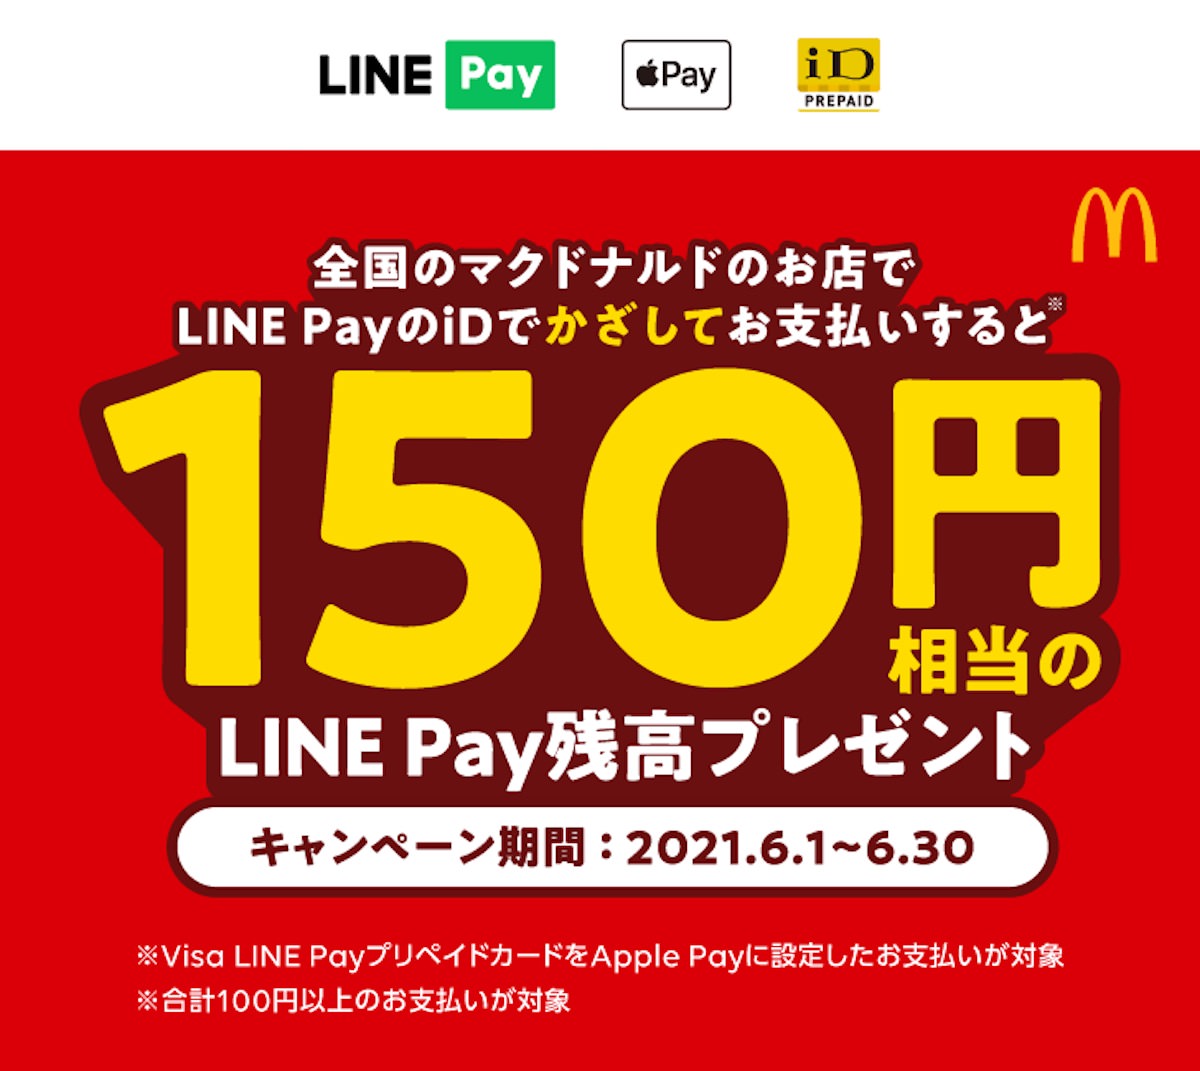 Line Pay 全国のマクドナルド店舗で150円還元キャンペーン Apple Pay Google Payのid決済で Corriente Top